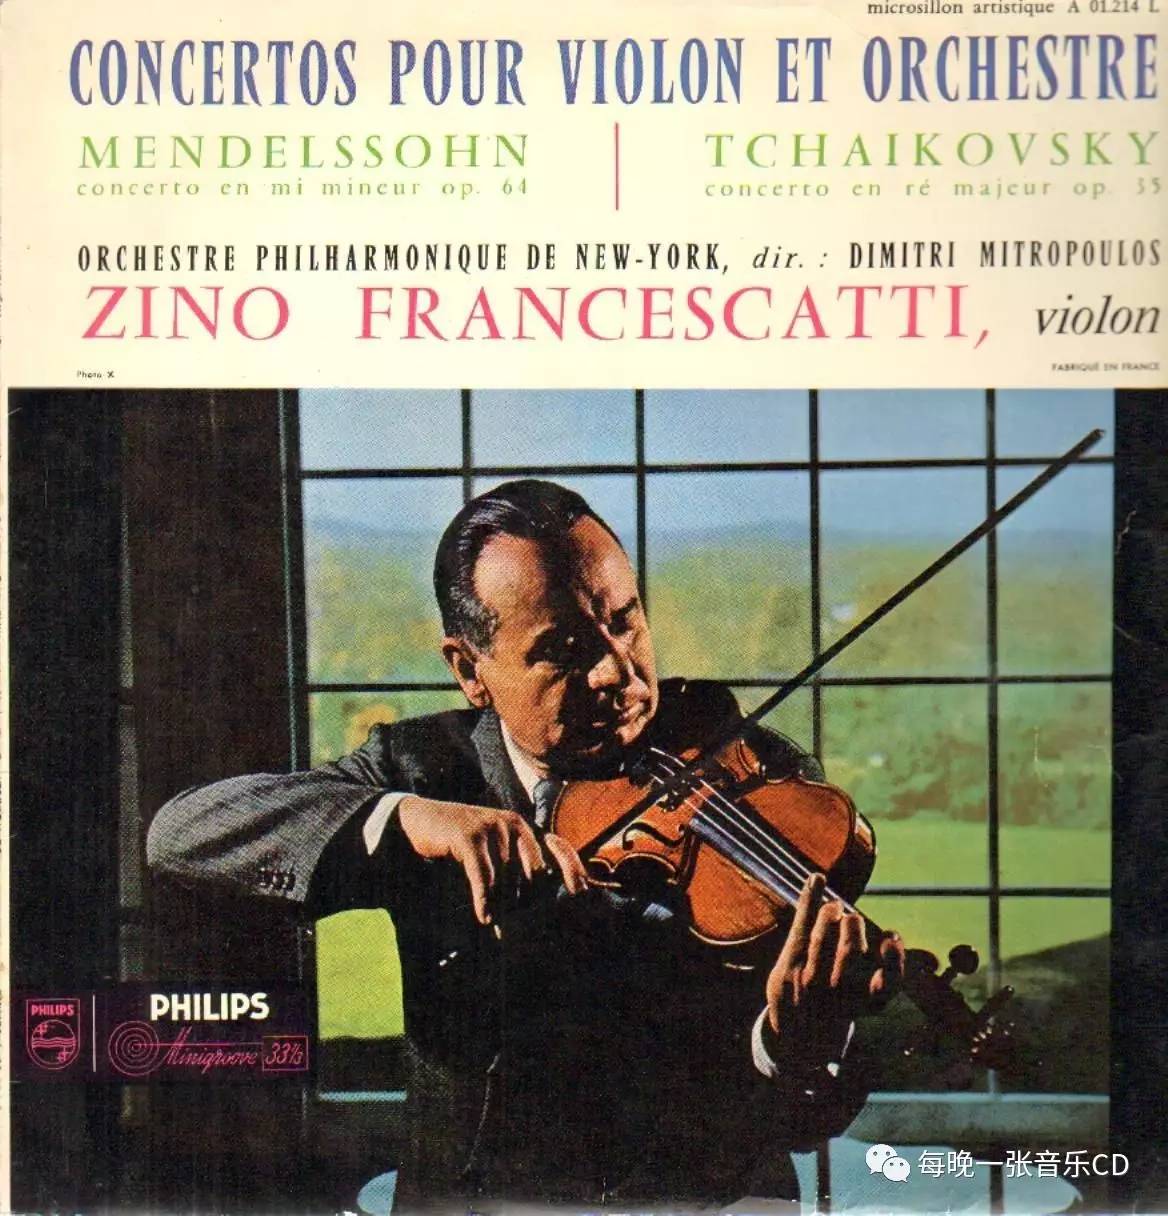 小提琴家弗兰切斯卡蒂说尽量多听别人的演奏并认真分析这样做可以学到